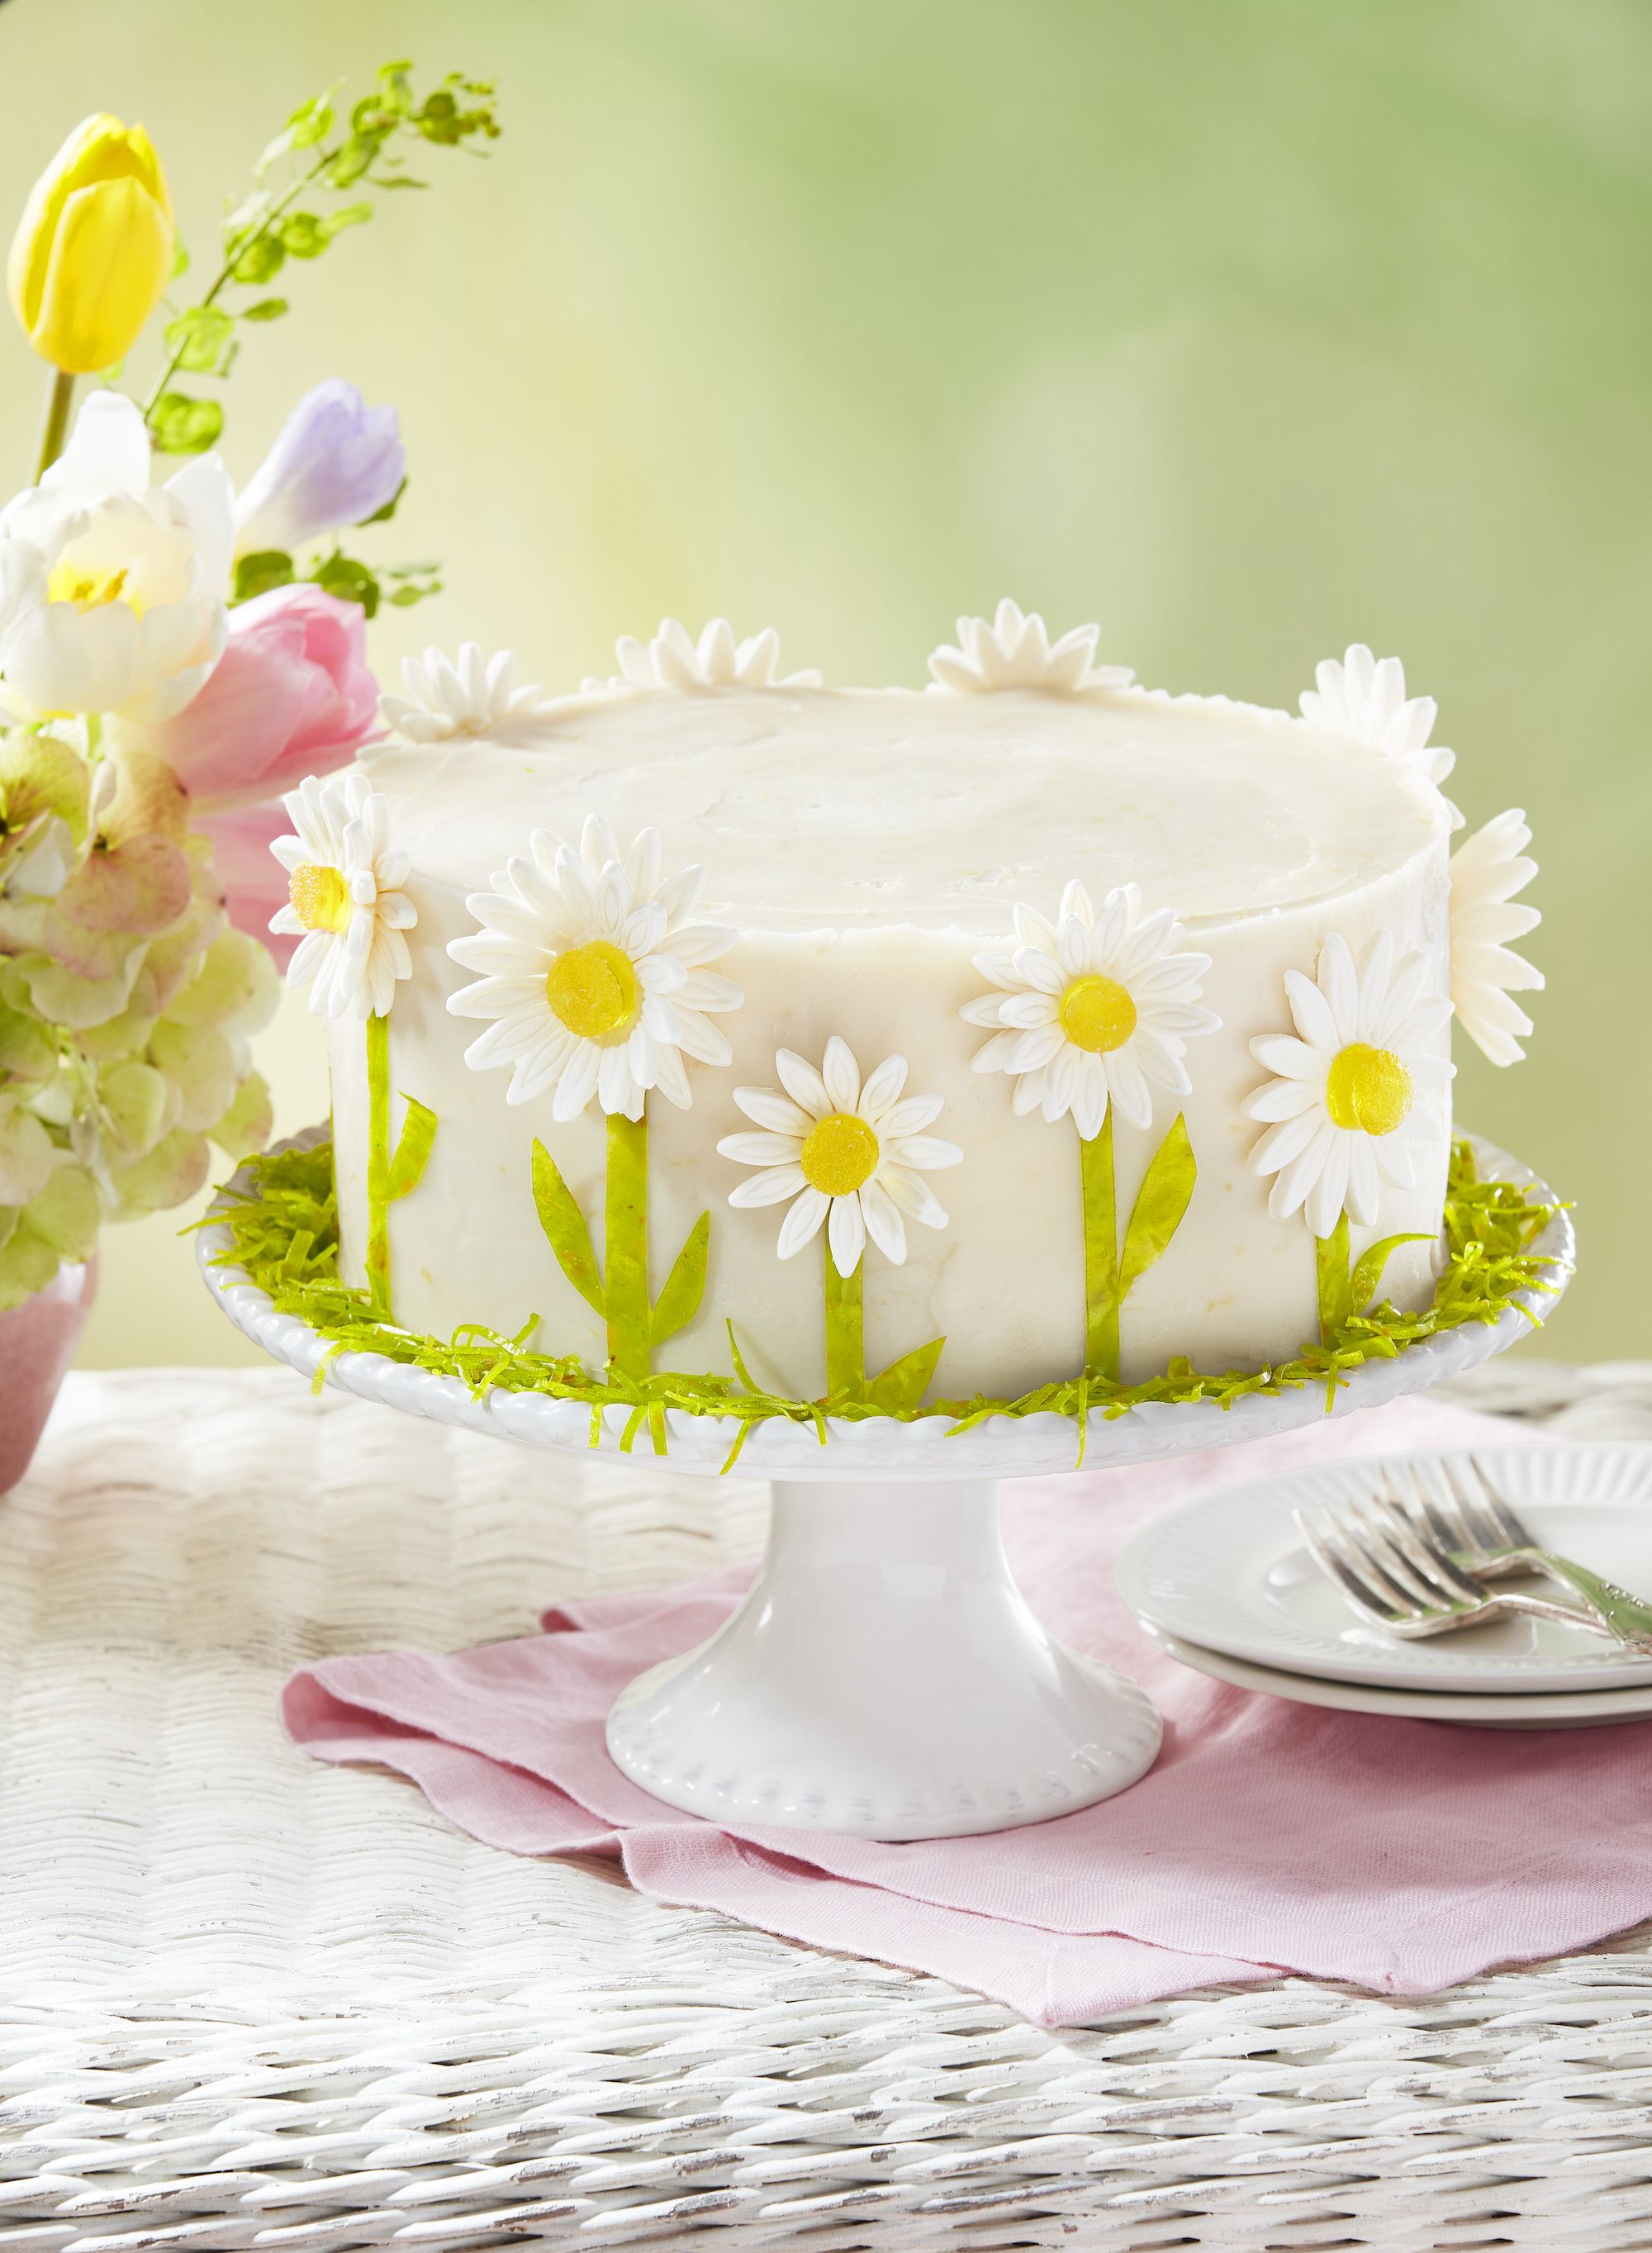 Pink Daisy Cake - Amazing Cake Ideas